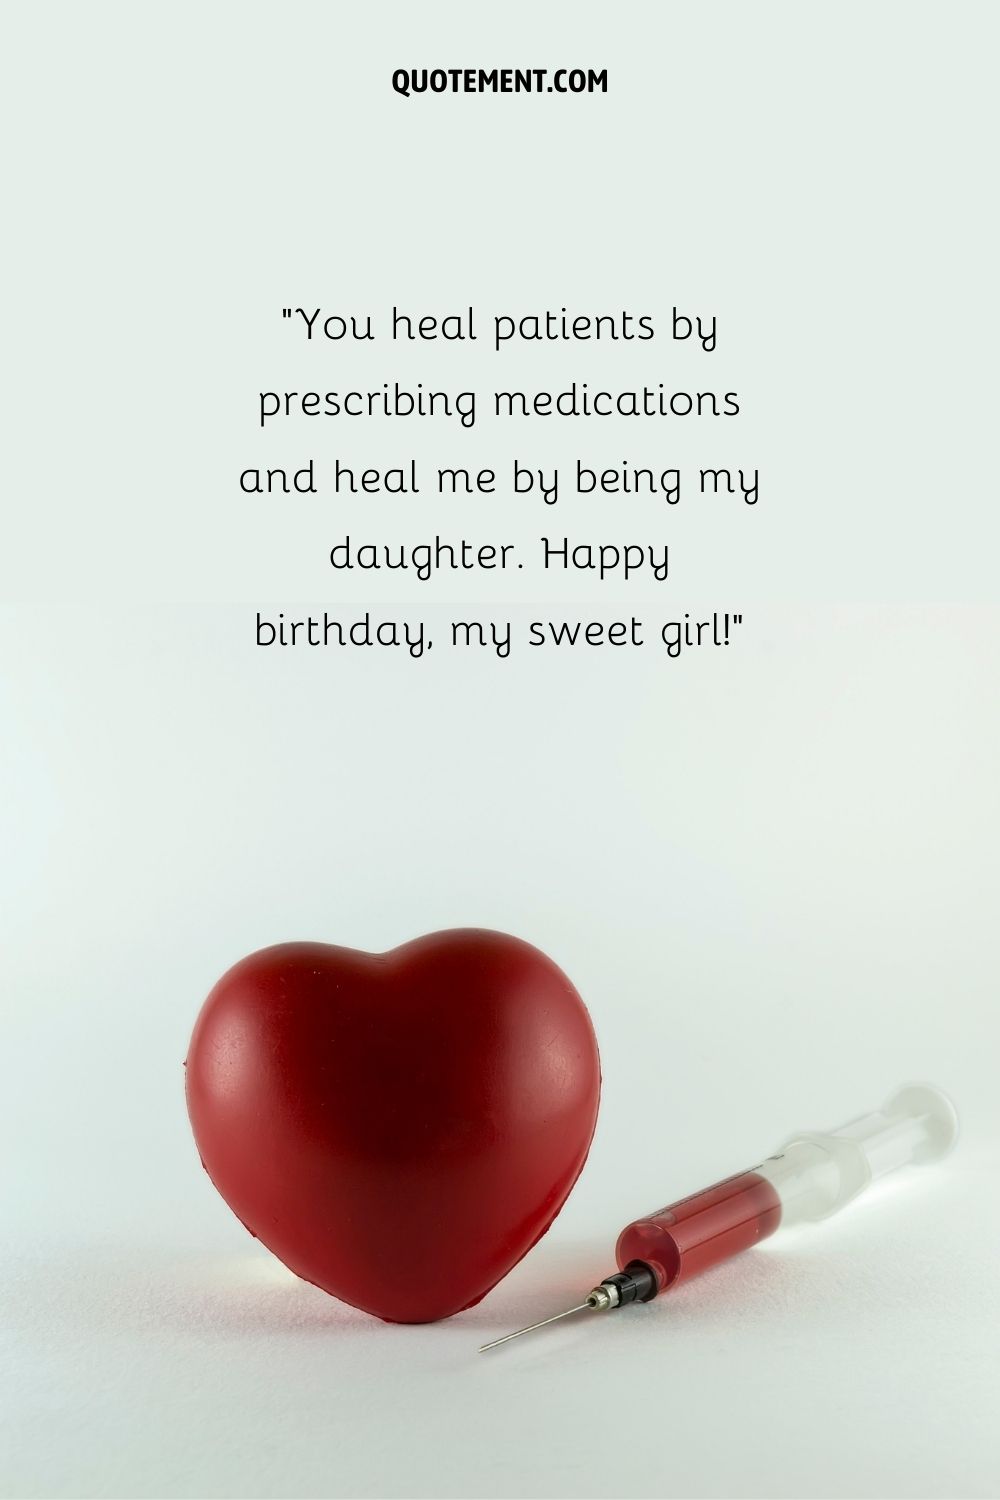 conmovedor deseo de cumpleaños para hija que representa feliz deseo de cumpleaños para dr